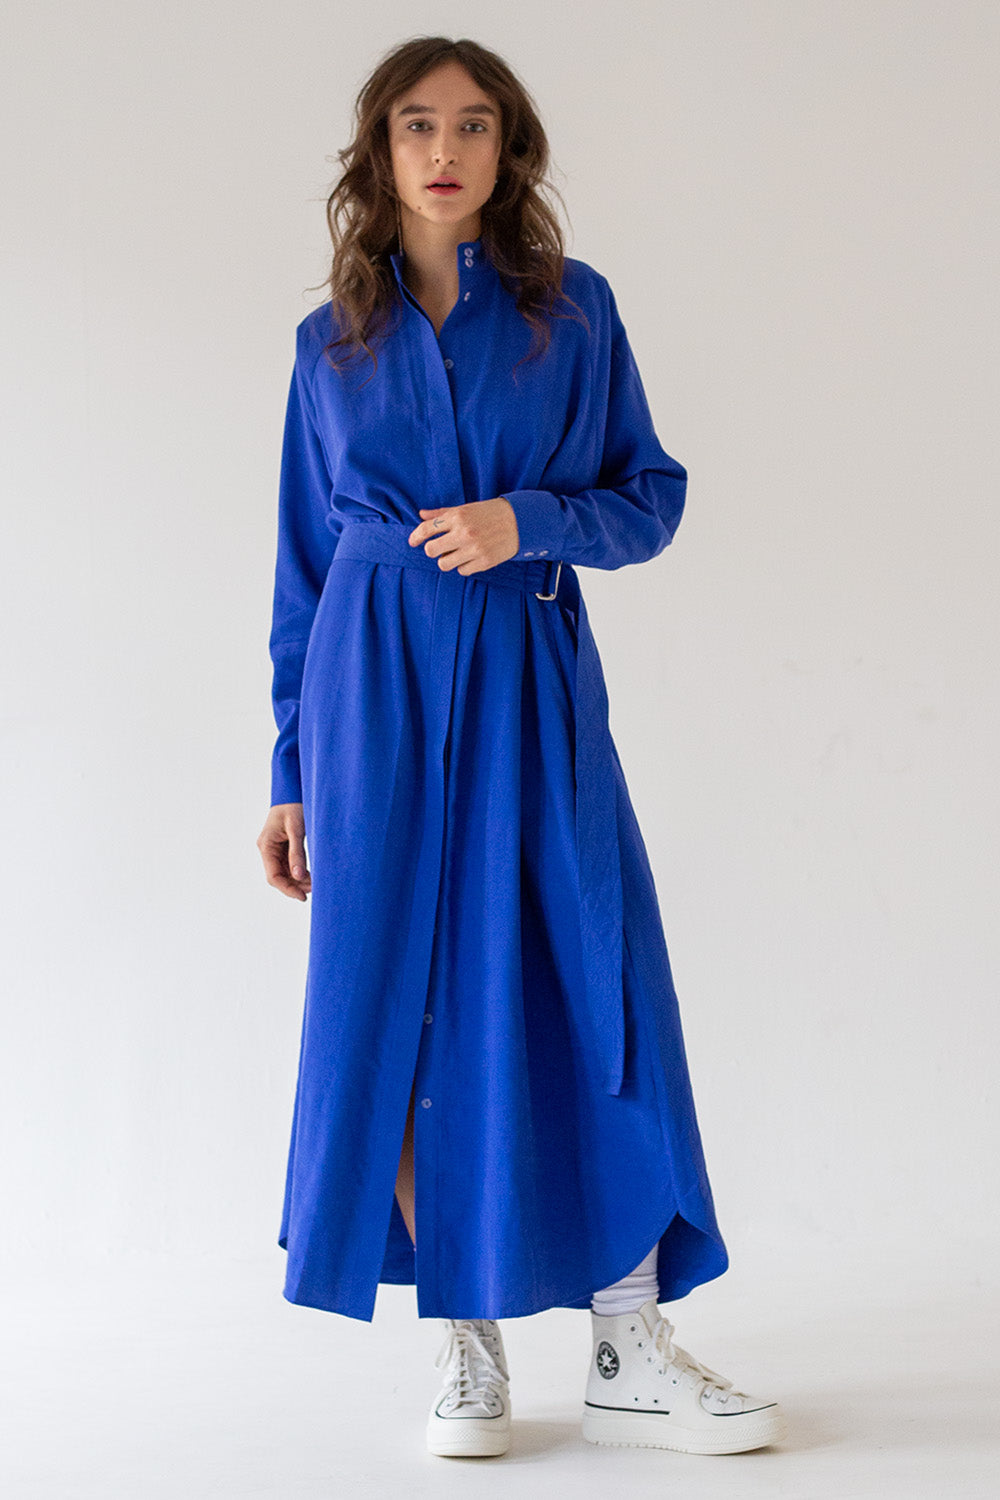 SHIRT DRESS WITH LONG SLEEVES MAXI  - ROYAL BLUE